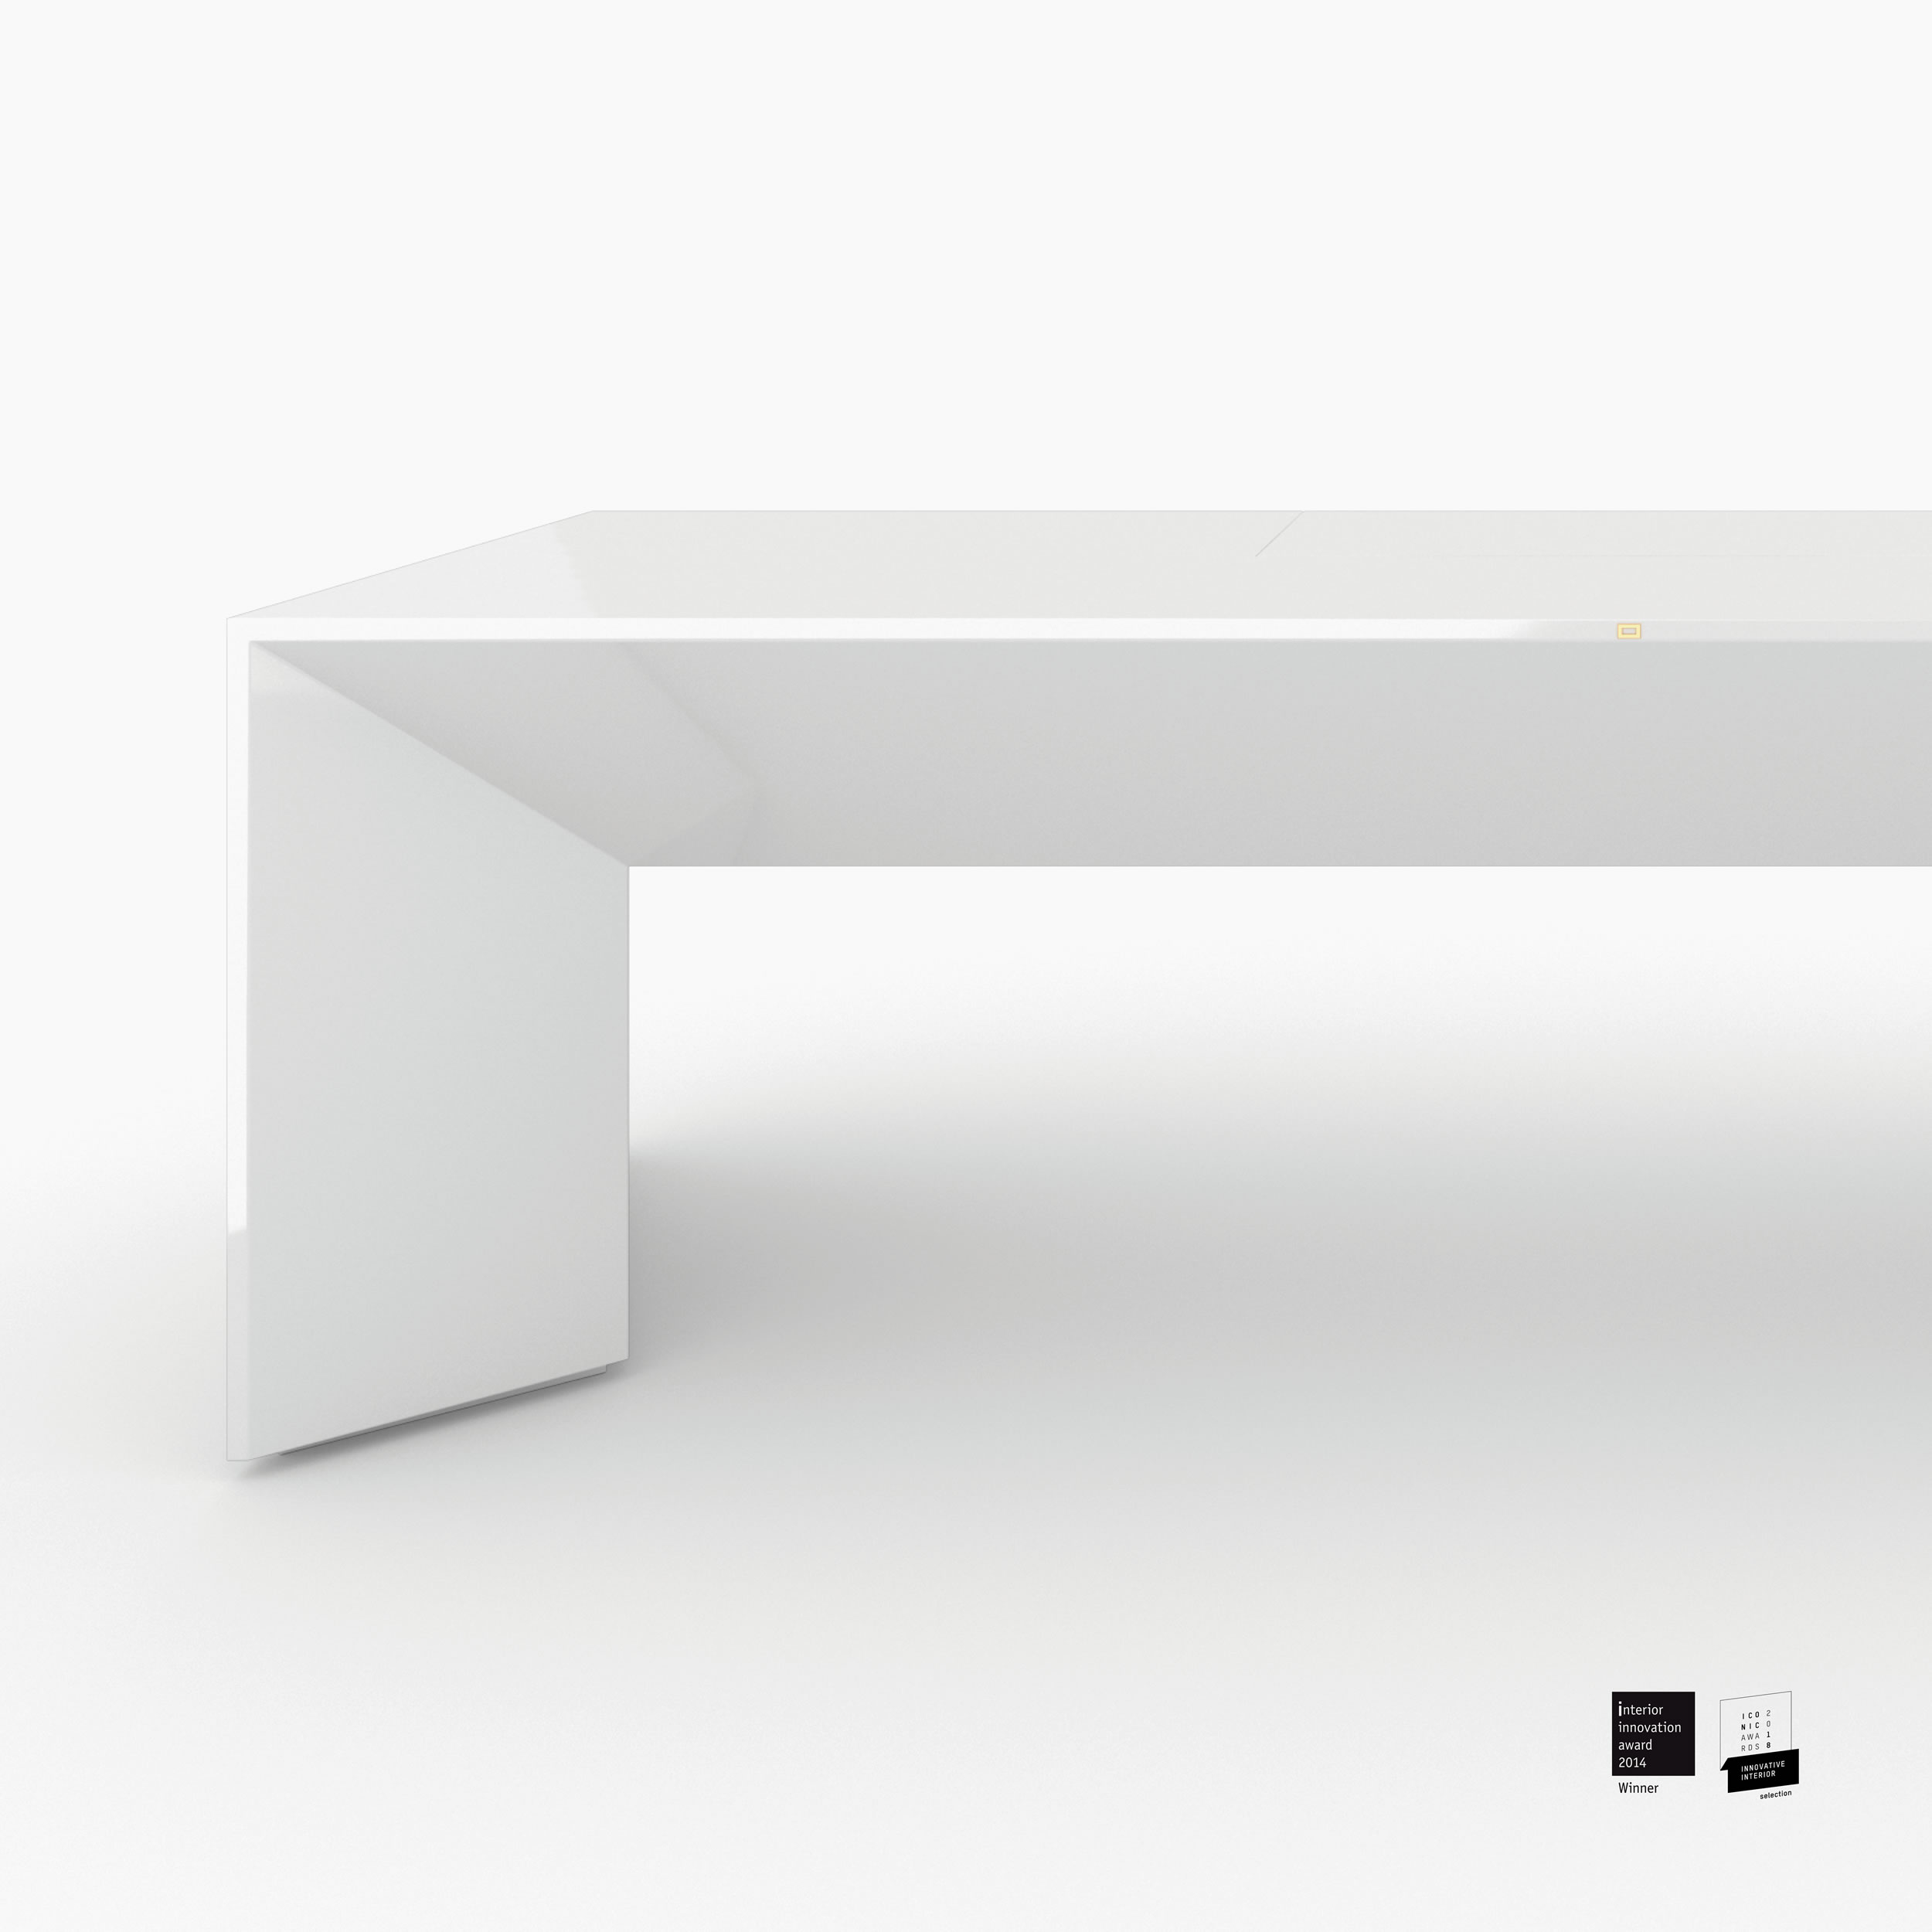 Schreibtischig weiss losangeles design Chefzimmer purist furniture Schreibtische FS 89 FELIX SCHWAKE